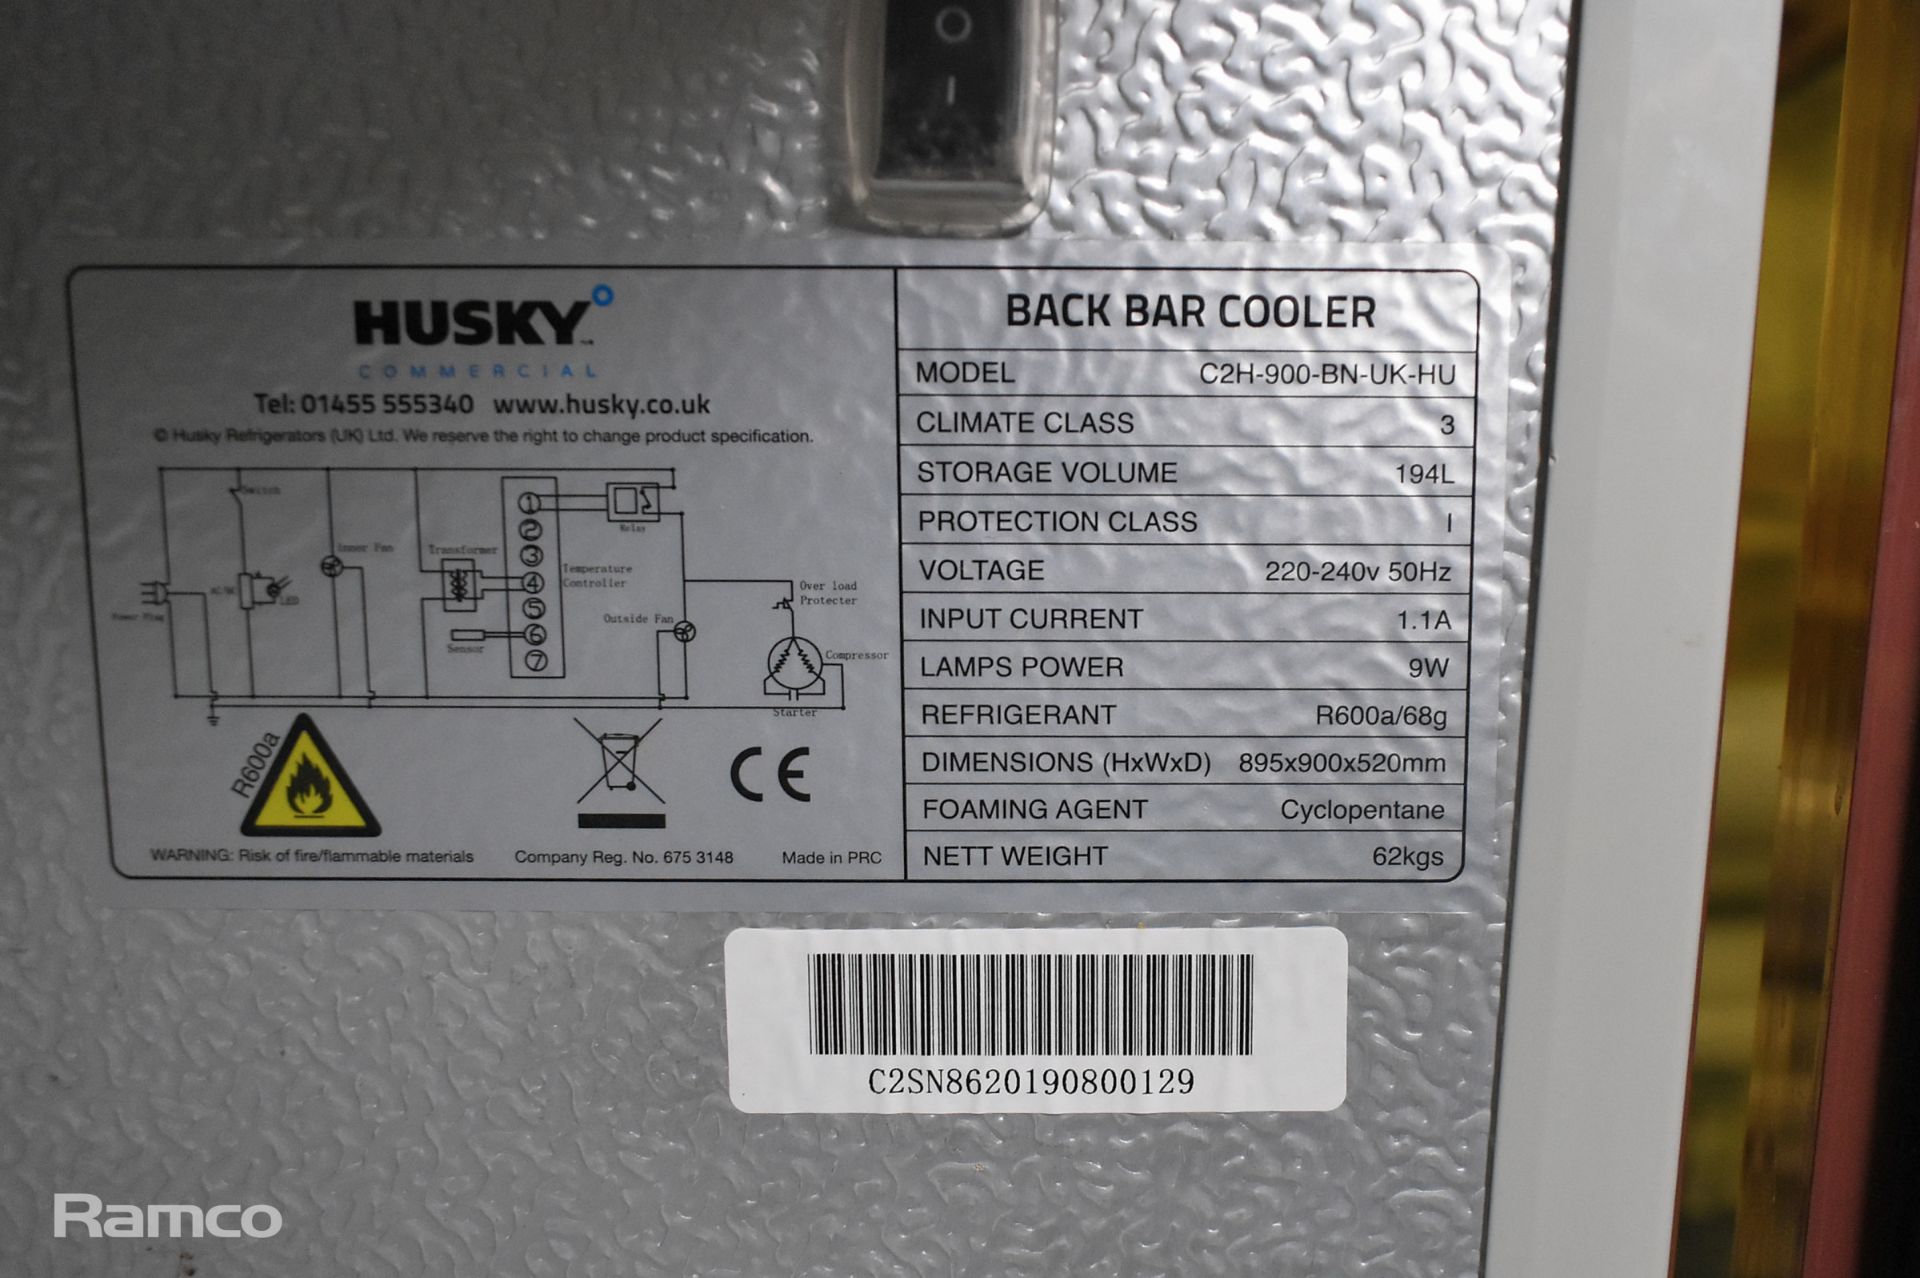 Husky C2H-900-BN-UK-HU double door bottle cooler - W 900 x D 500 x H 880mm - Image 3 of 3